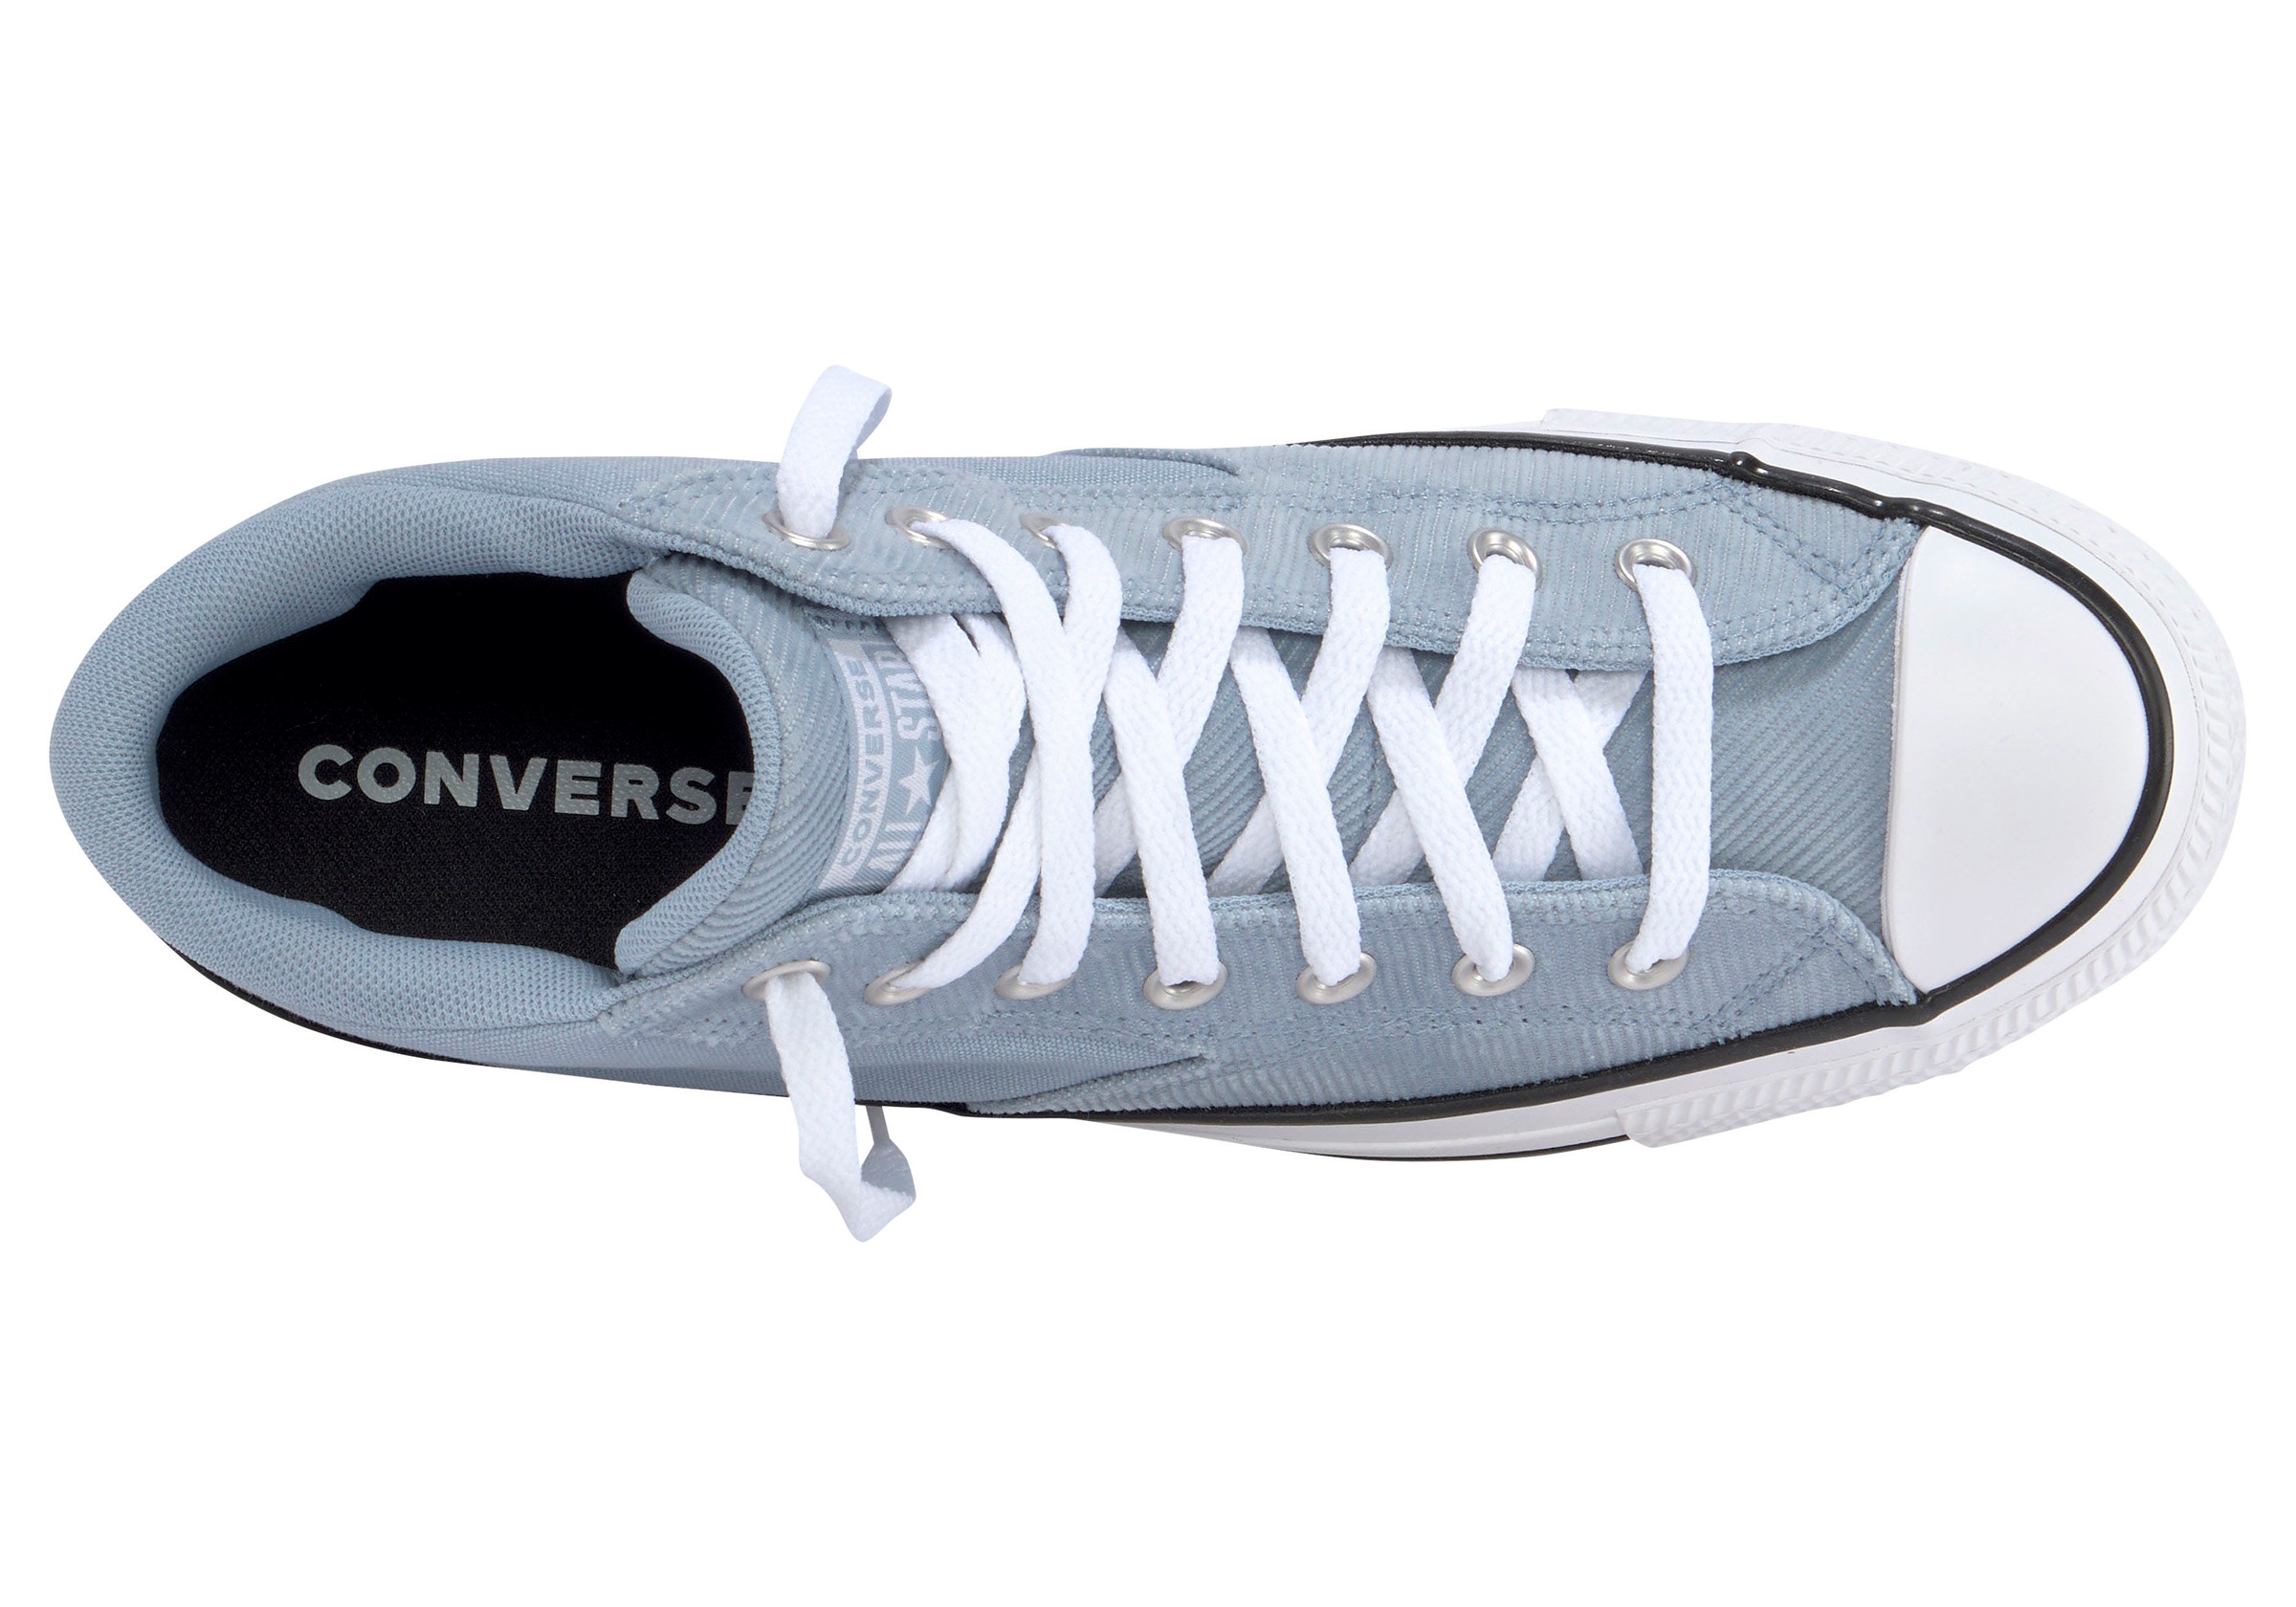 STREET« STAR MALDEN kaufen ALL Sneaker TAYLOR »CHUCK Converse